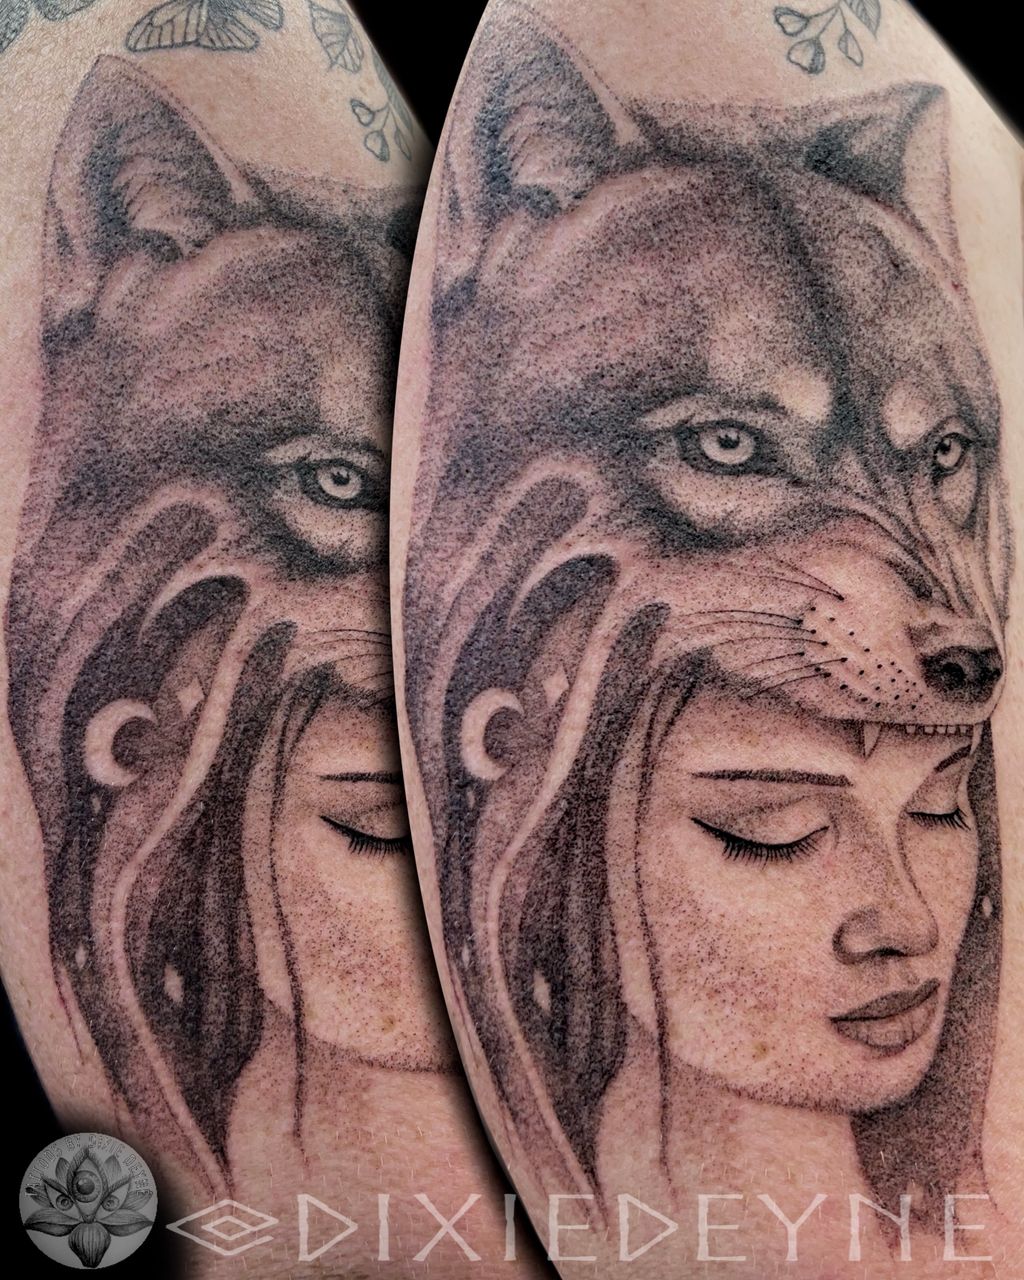 Tattoos by Dixie Deyné